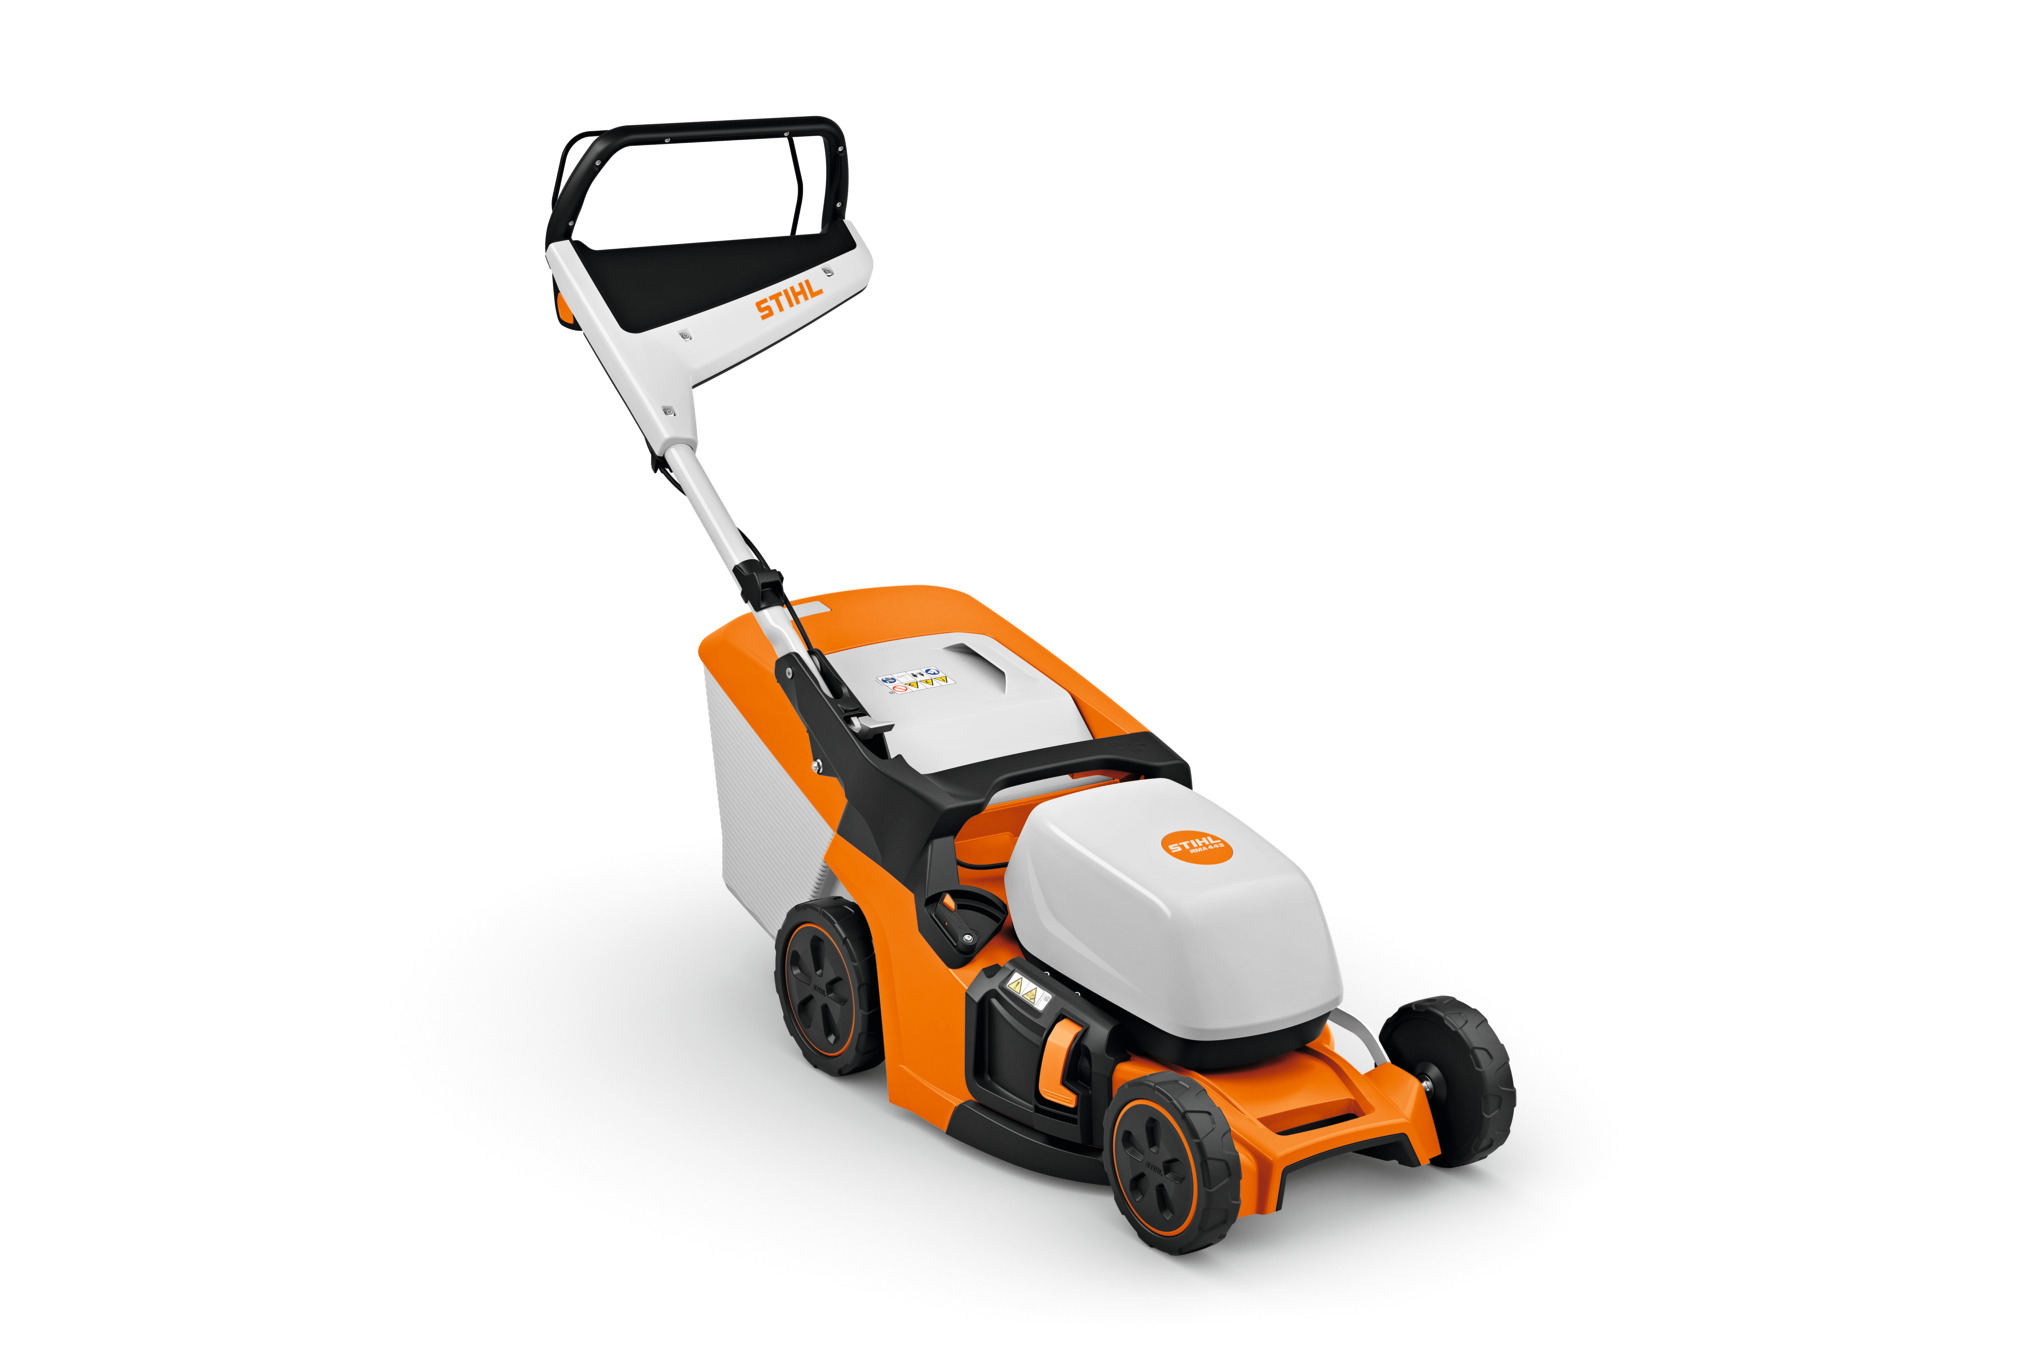 RMA 443 Cordless Lawn Mower – AK System